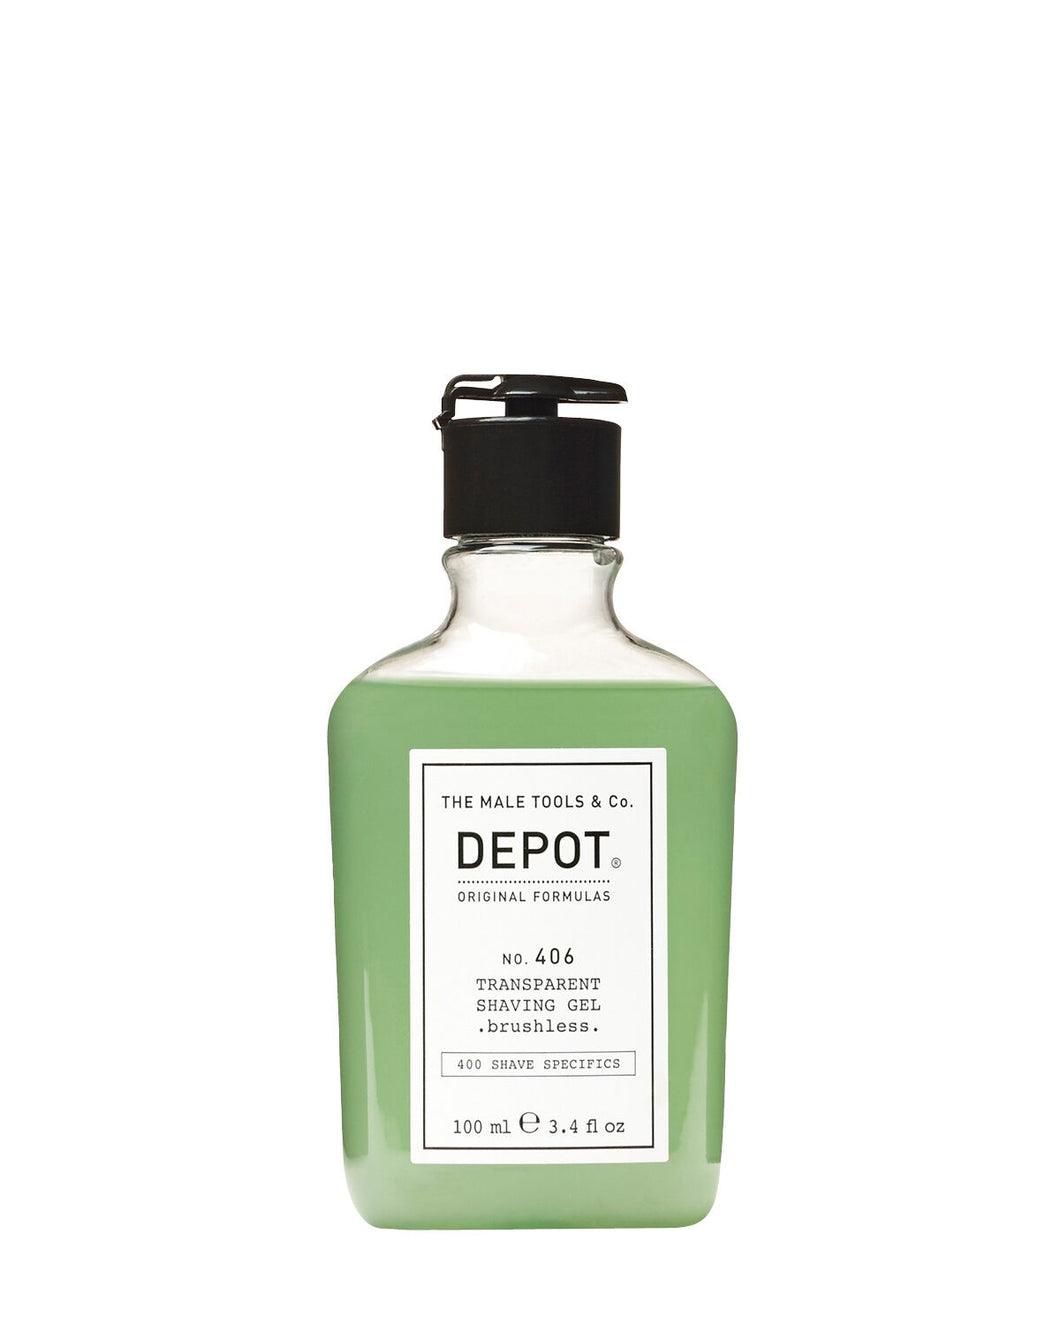 Depot- Transparent Shaving Gel- brushless 406